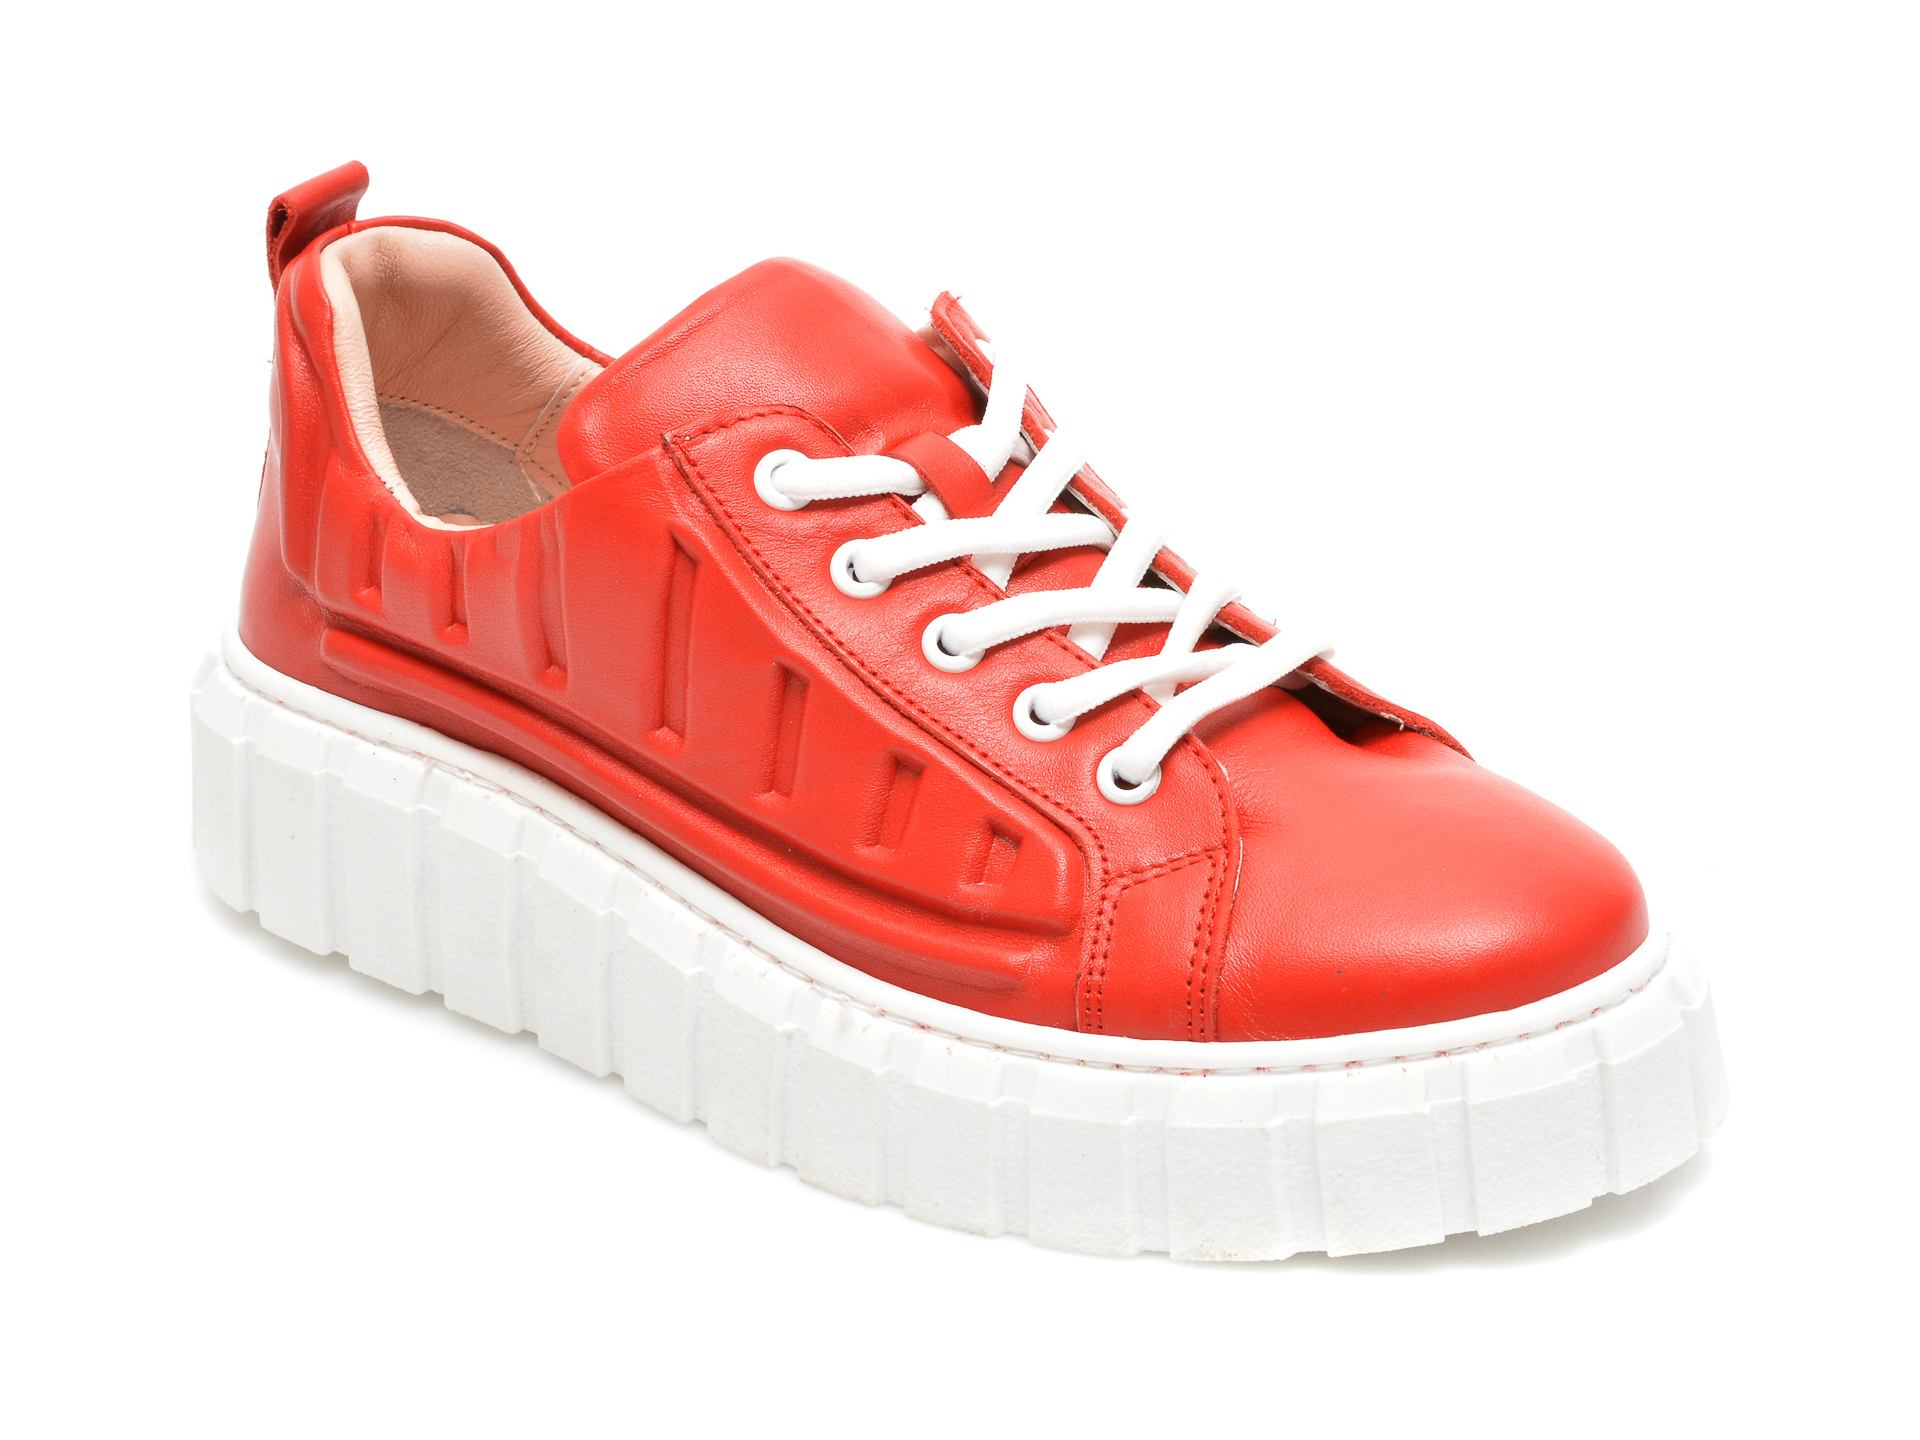 Pantofi FLAVIA PASSINI rosii, 922502, din piele naturala Flavia Passini